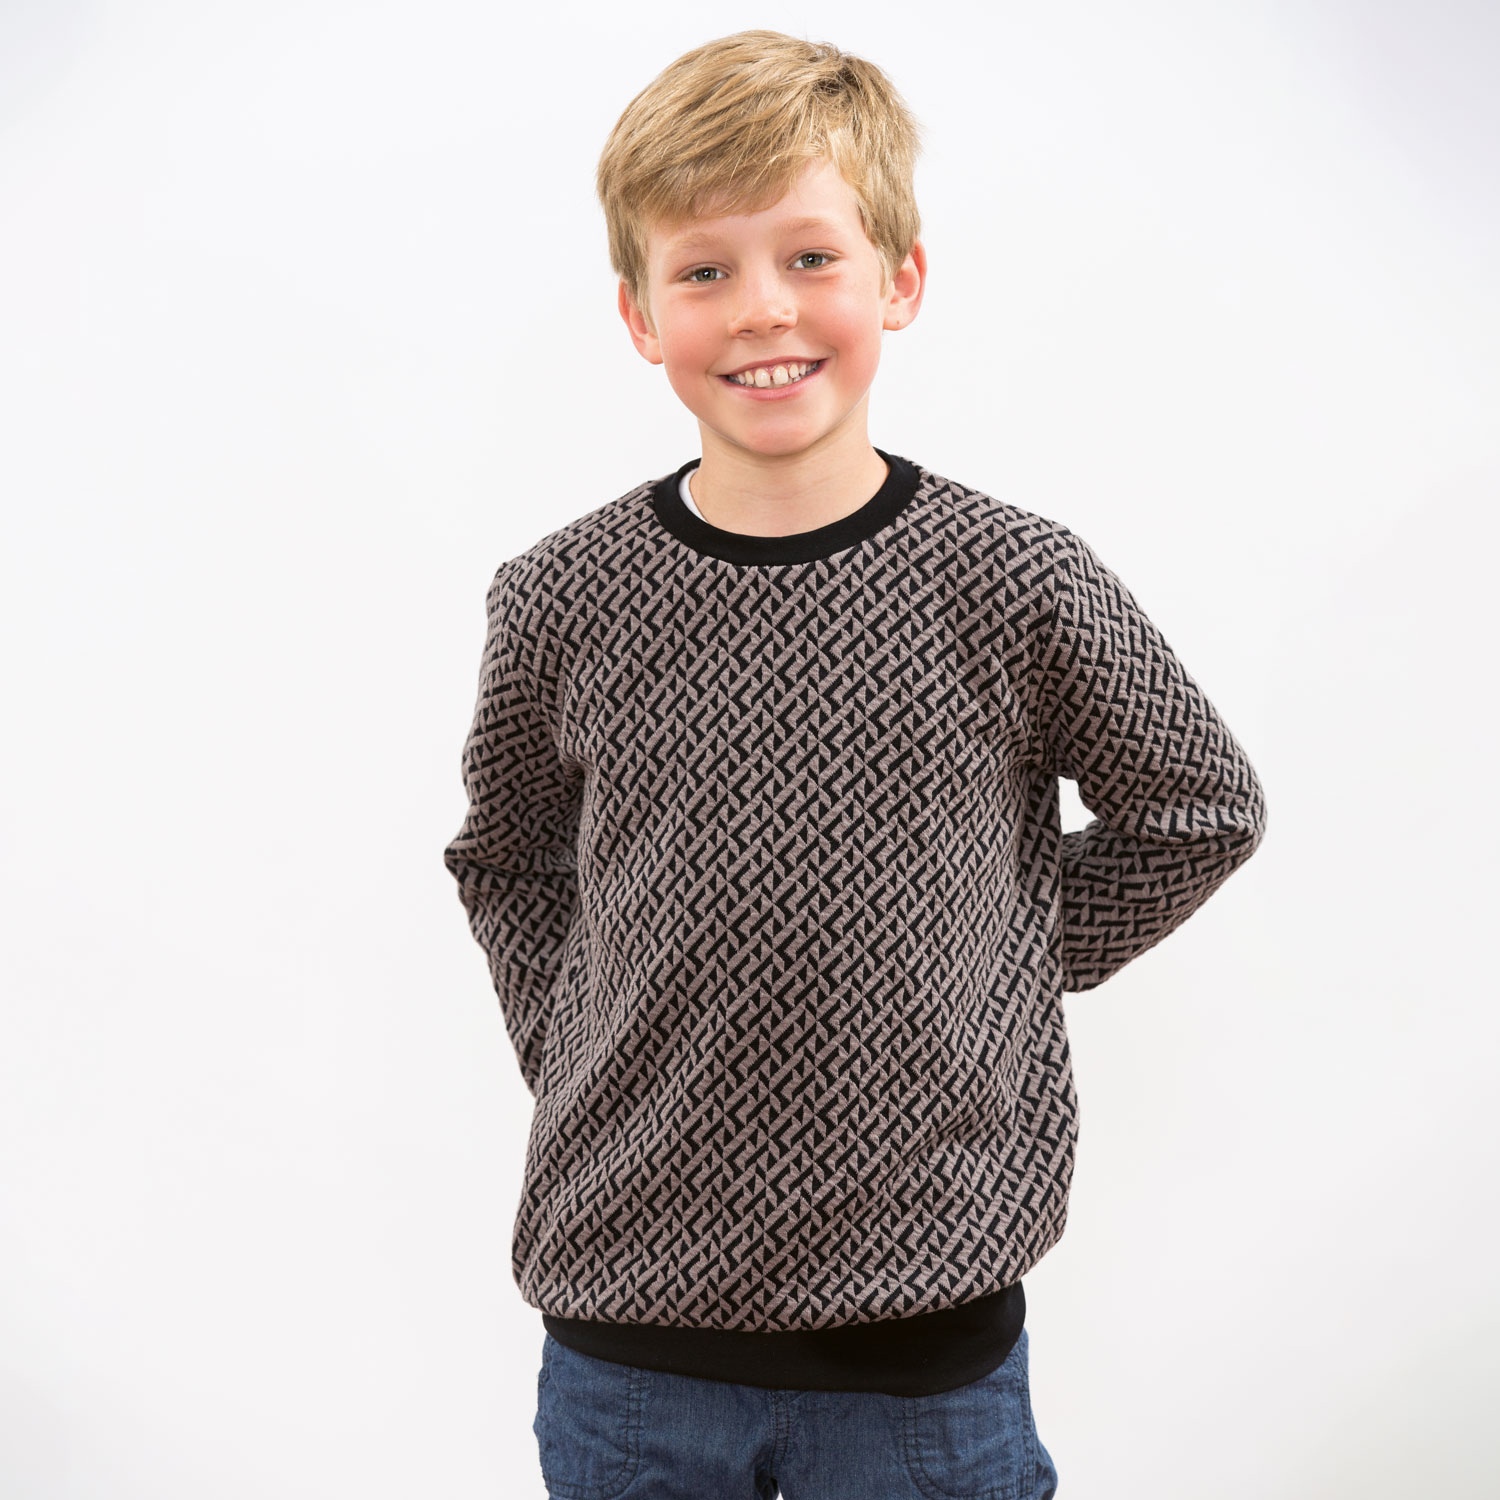 Выкройка Детский свитер на мальчика Размеры на рост 98-164 см Вам потребуется: Джерси 50/115/130 см (до размера 116/140/164) На манжеты 30 см